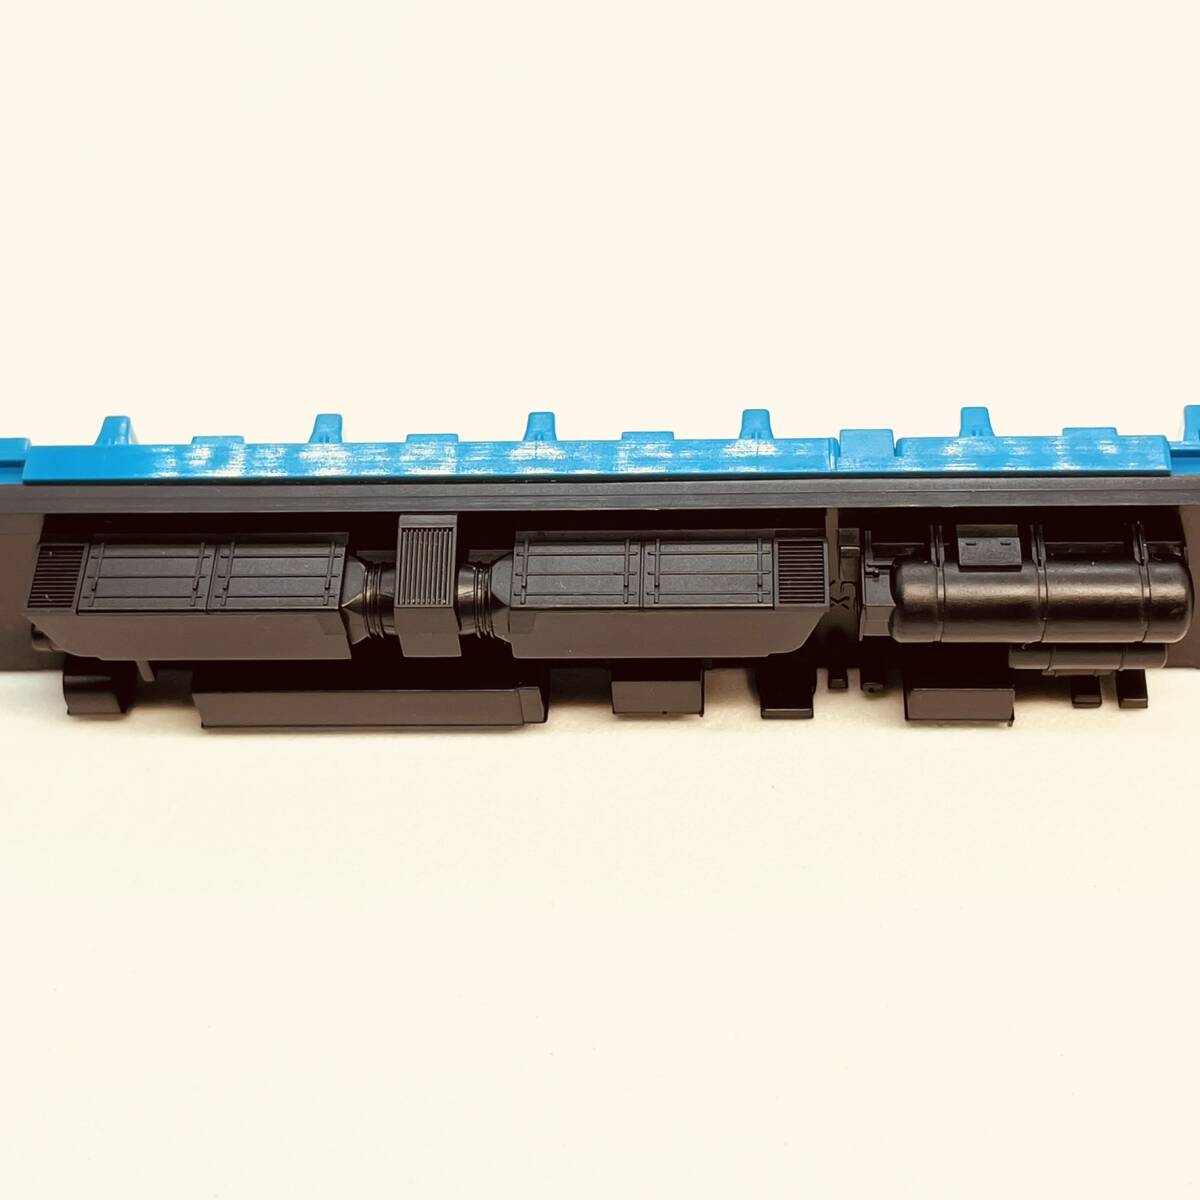 TOMIX モハネ583 後期型用 シート+ウェイト+床板 1両分入り 98771 国鉄 583系特急電車(クハネ583)基本セットからのバラシ_詳細画像です。